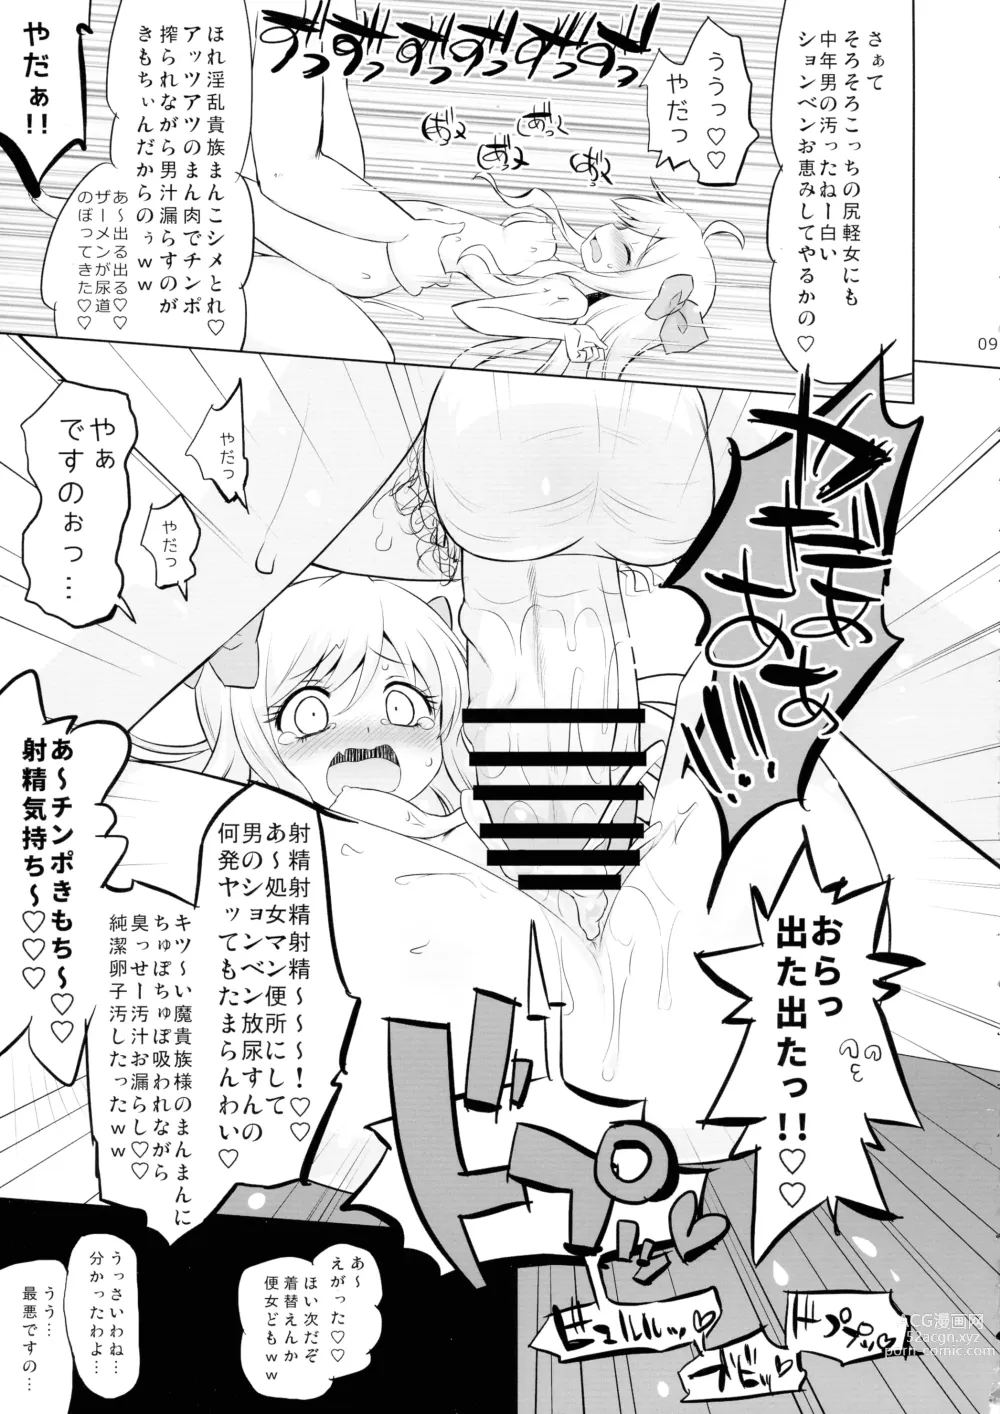 Page 9 of doujinshi Jashin-chan VS Yami no CroFun